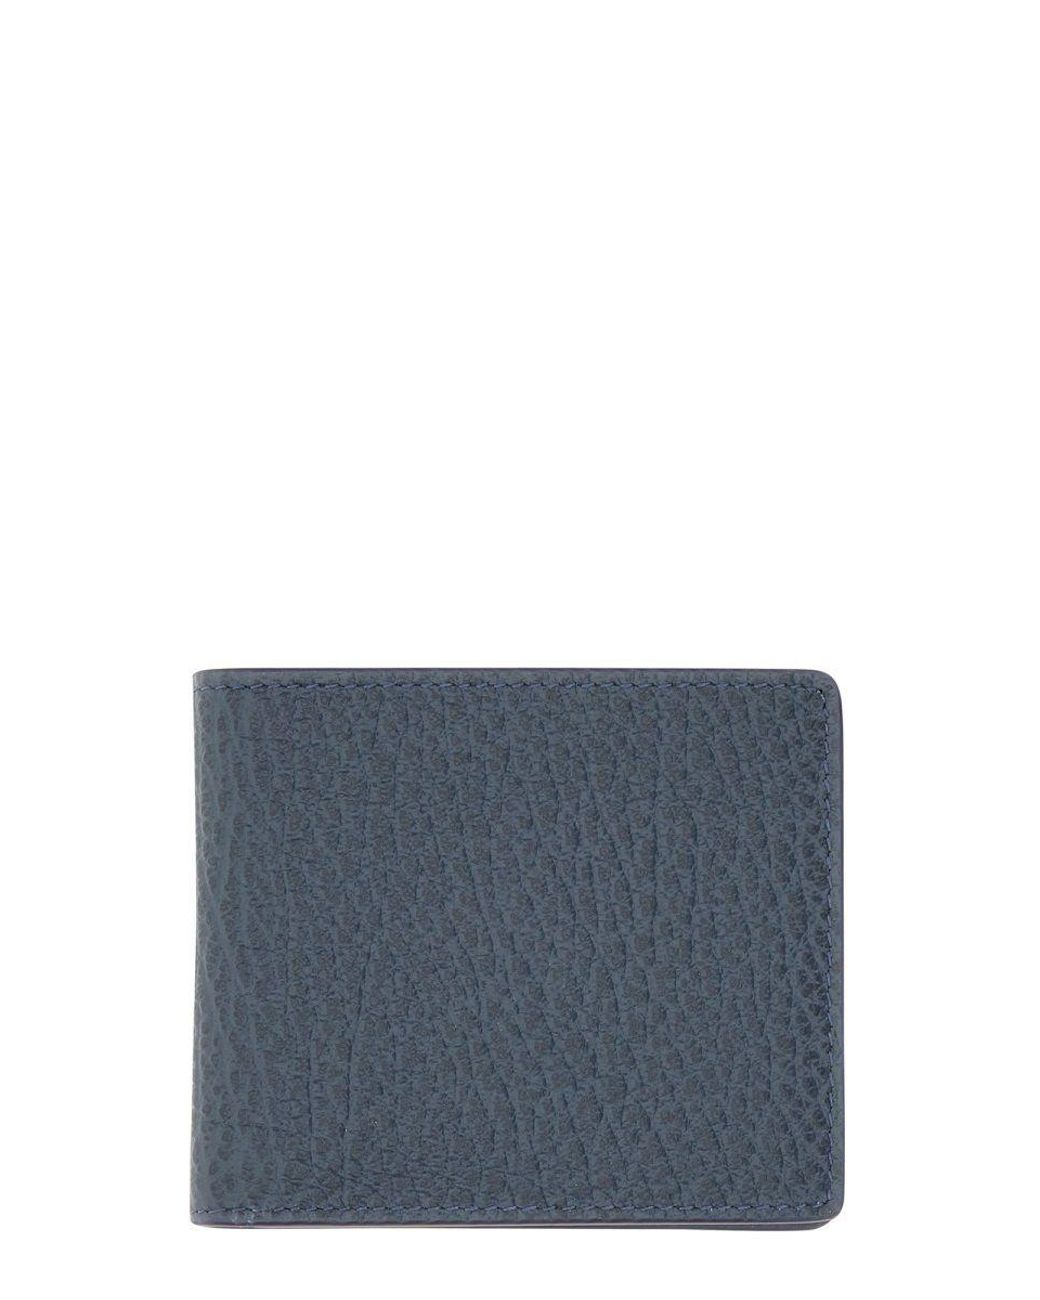 Maison Margiela Leder Andere materialien brieftaschen in Blau für Herren Herren Accessoires Handschuhe 